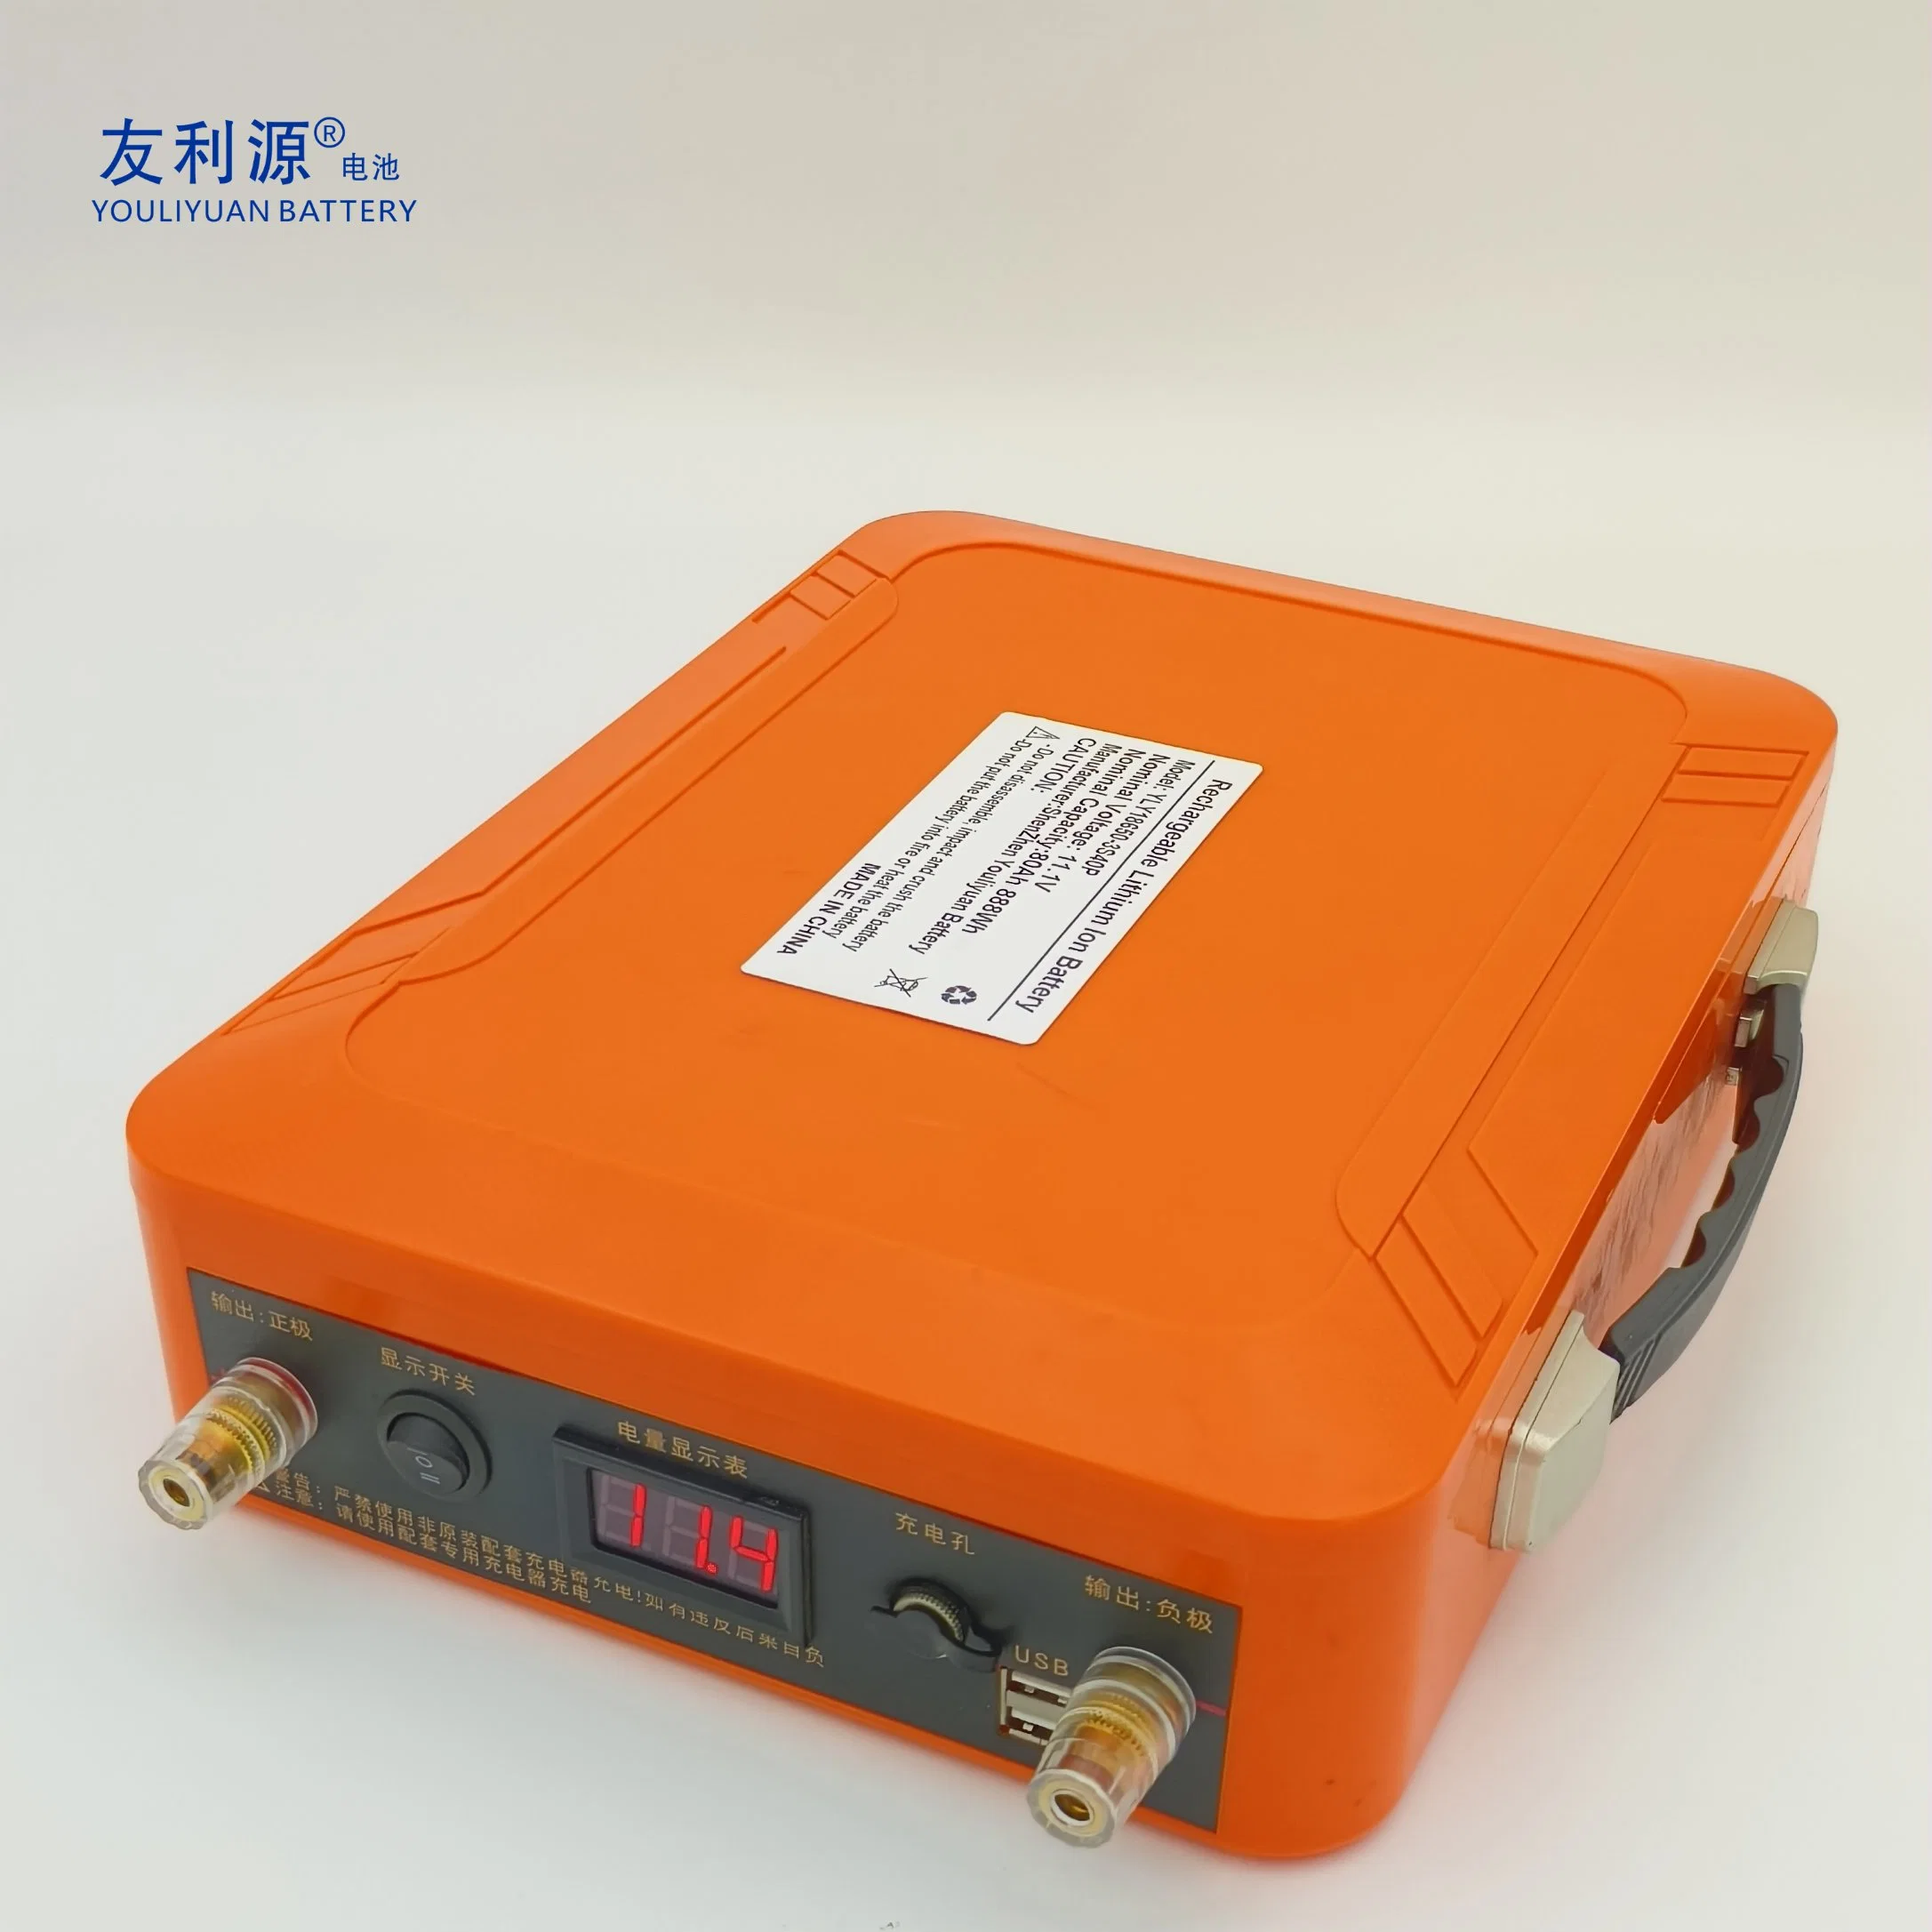 Usine/Fabricant de batteries OEM Power 18650 3s40p 11.1V80ah 888wh Pack de batteries lithium-ion 12V 18650 pour système de stockage d'énergie avec BMS/PCB et interrupteur.